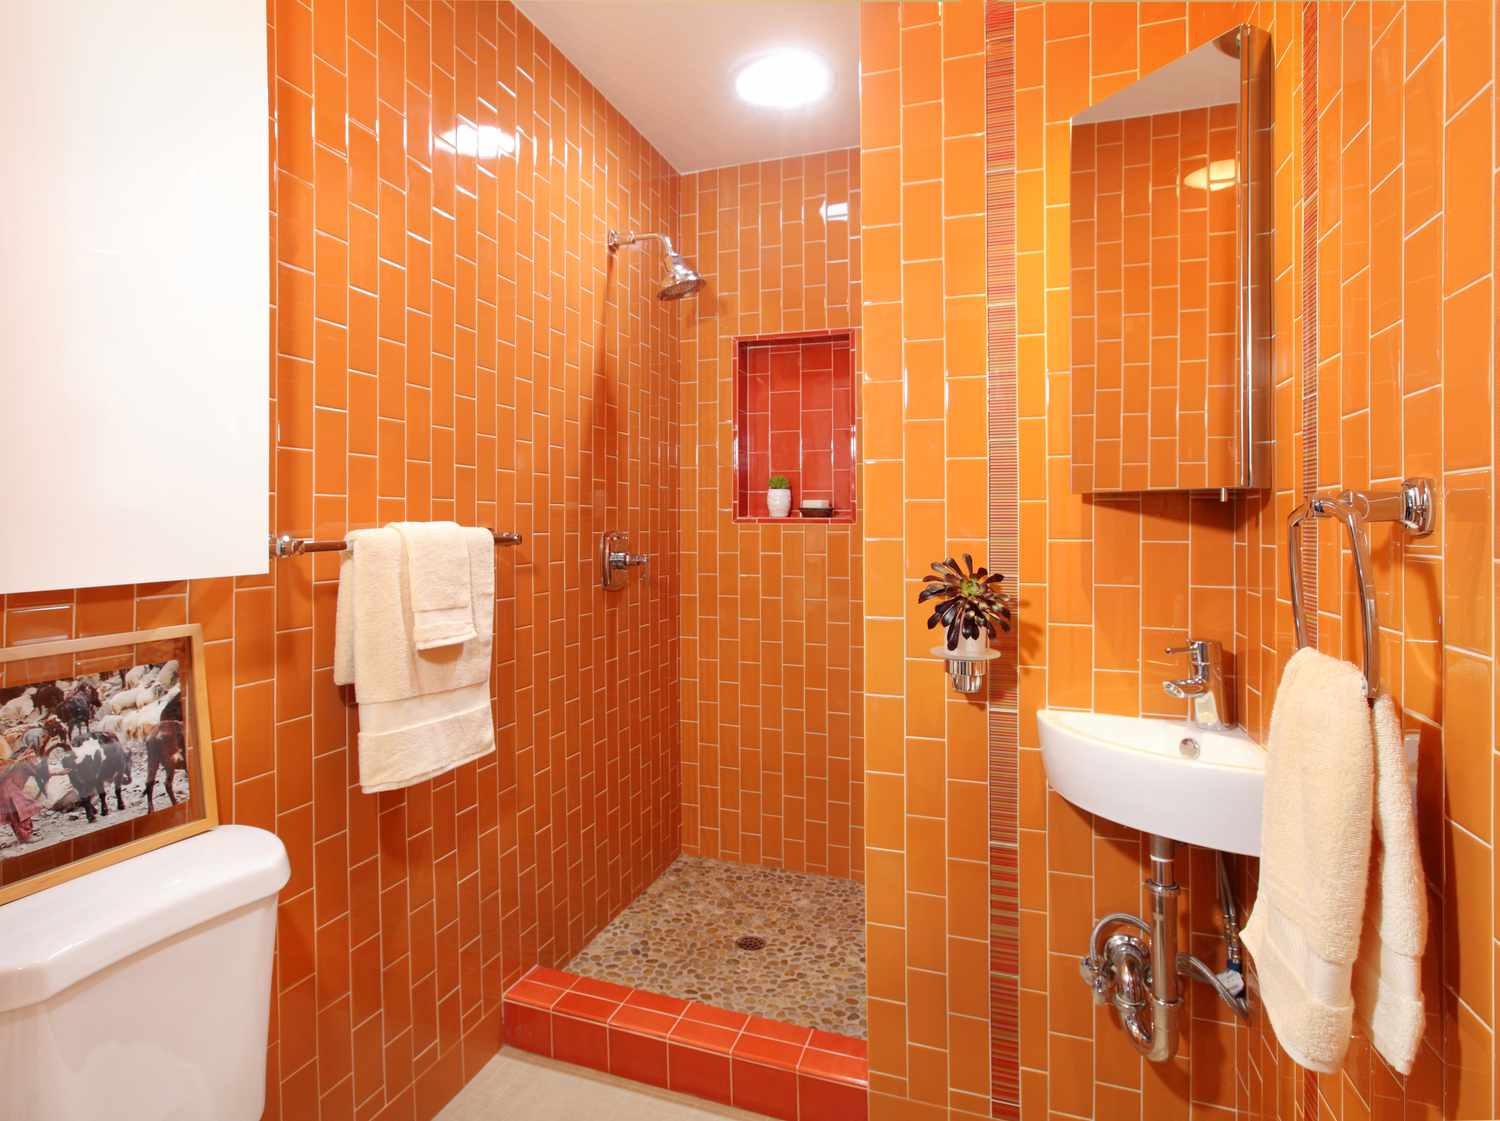 Baño luminoso y lleno de energía con paleta monocromática de color naranja.